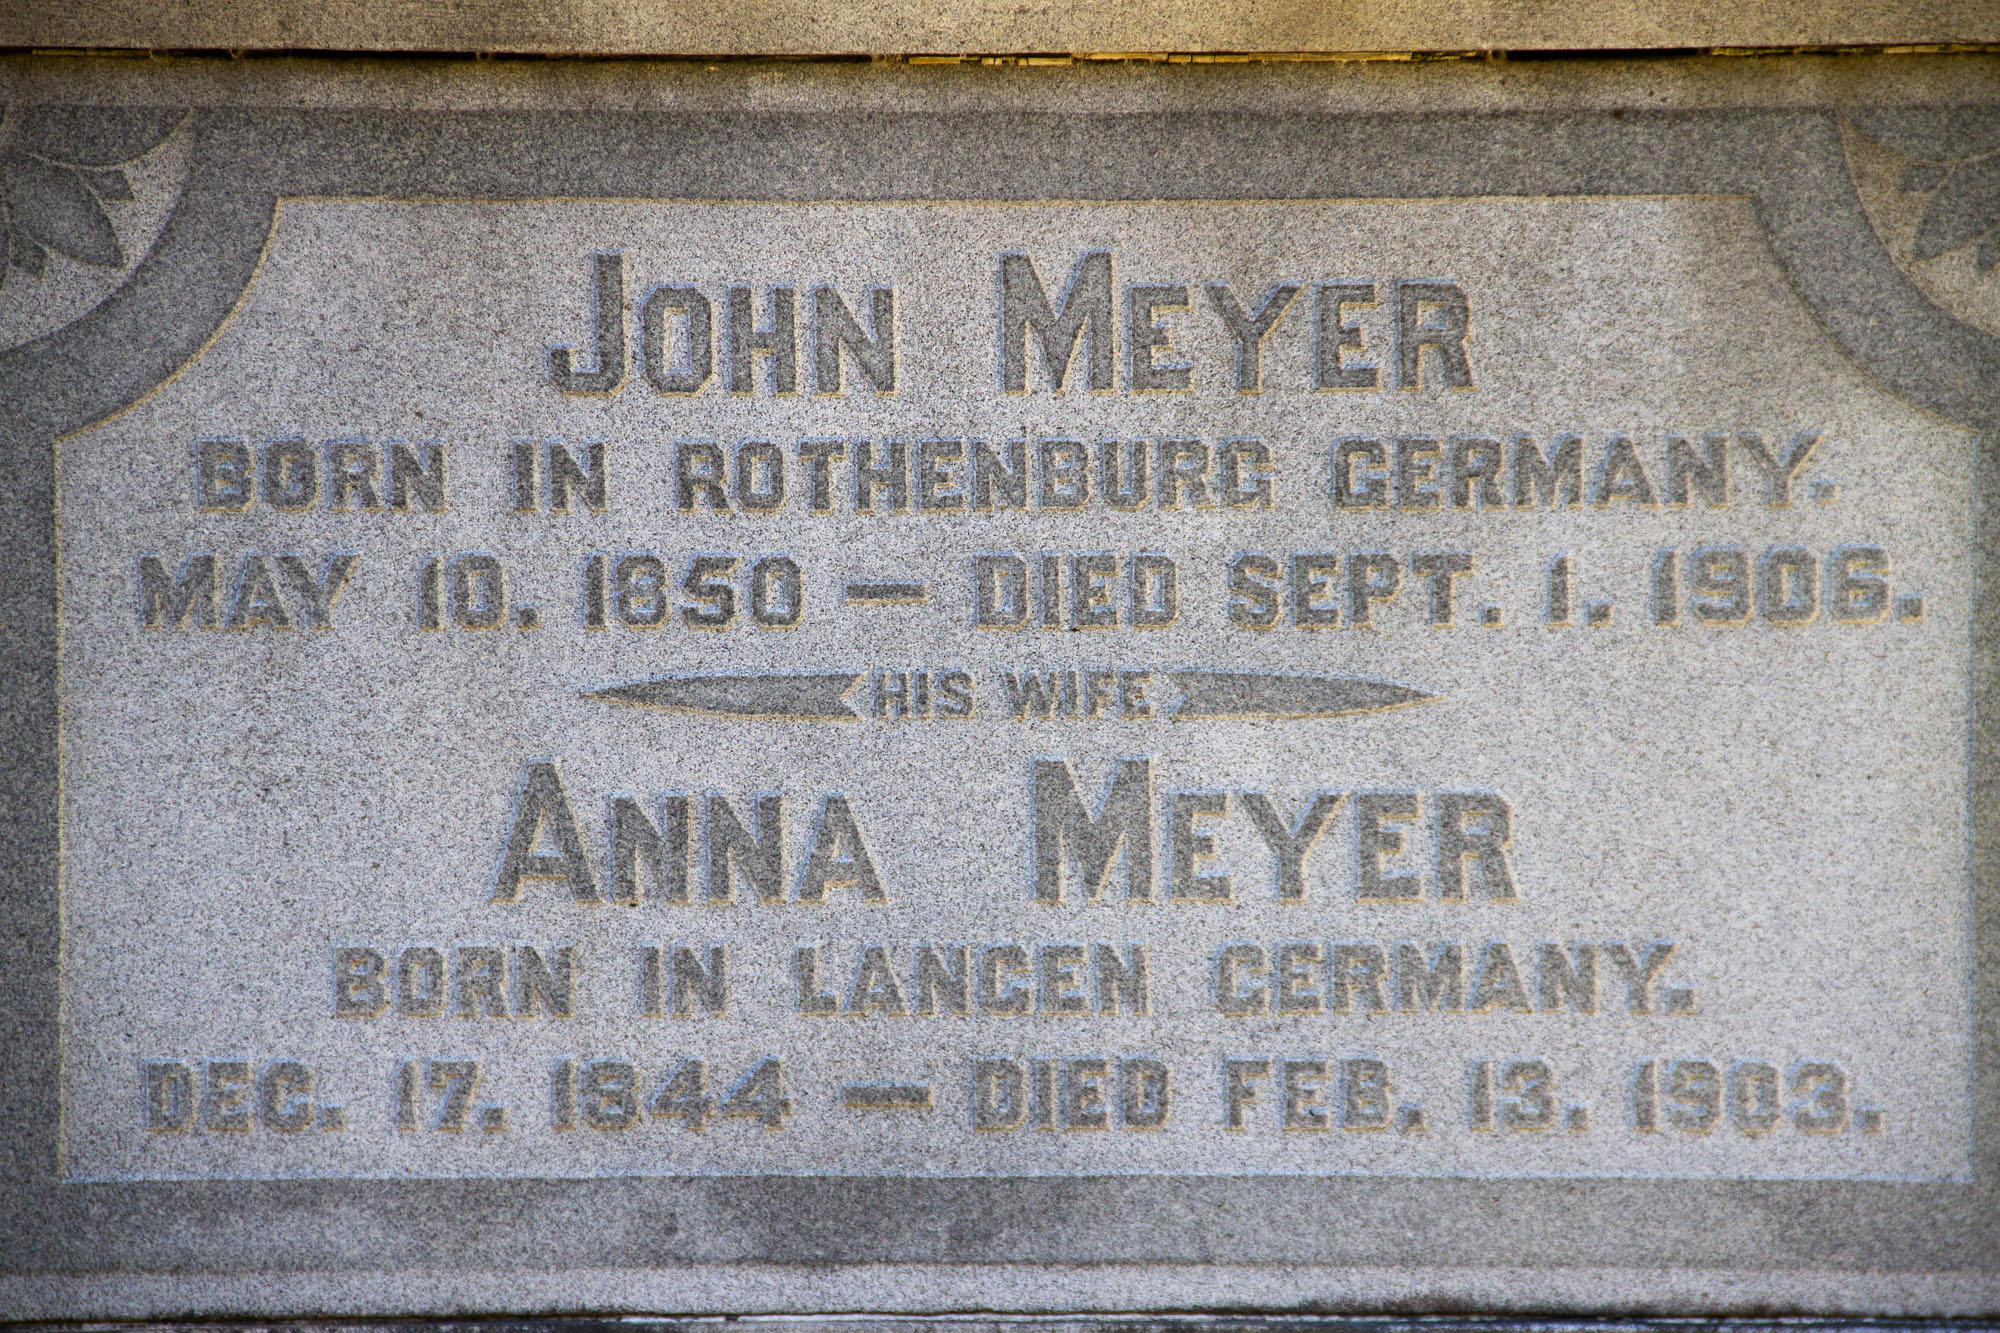 John Meyer Savannah